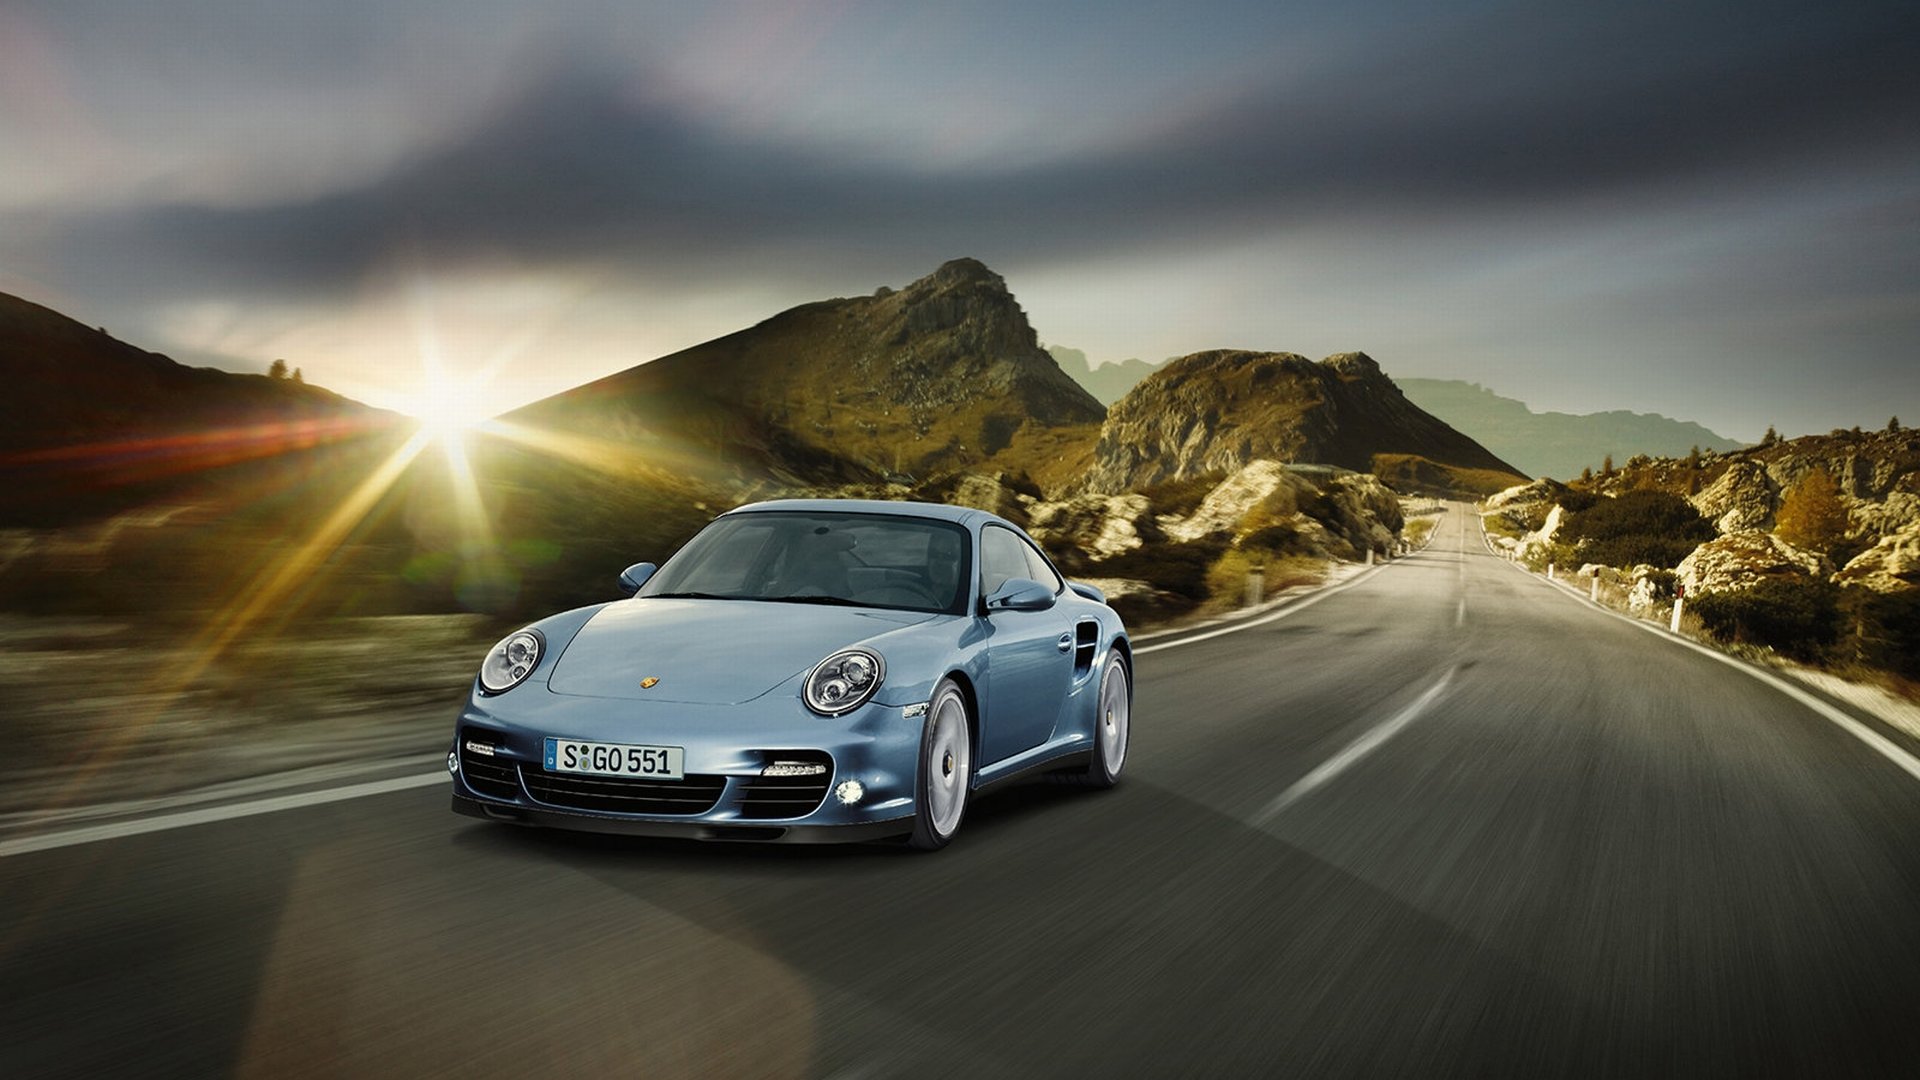 Best Porsche Wallpaper Id - Porsche 911 Turbo S - HD Wallpaper 